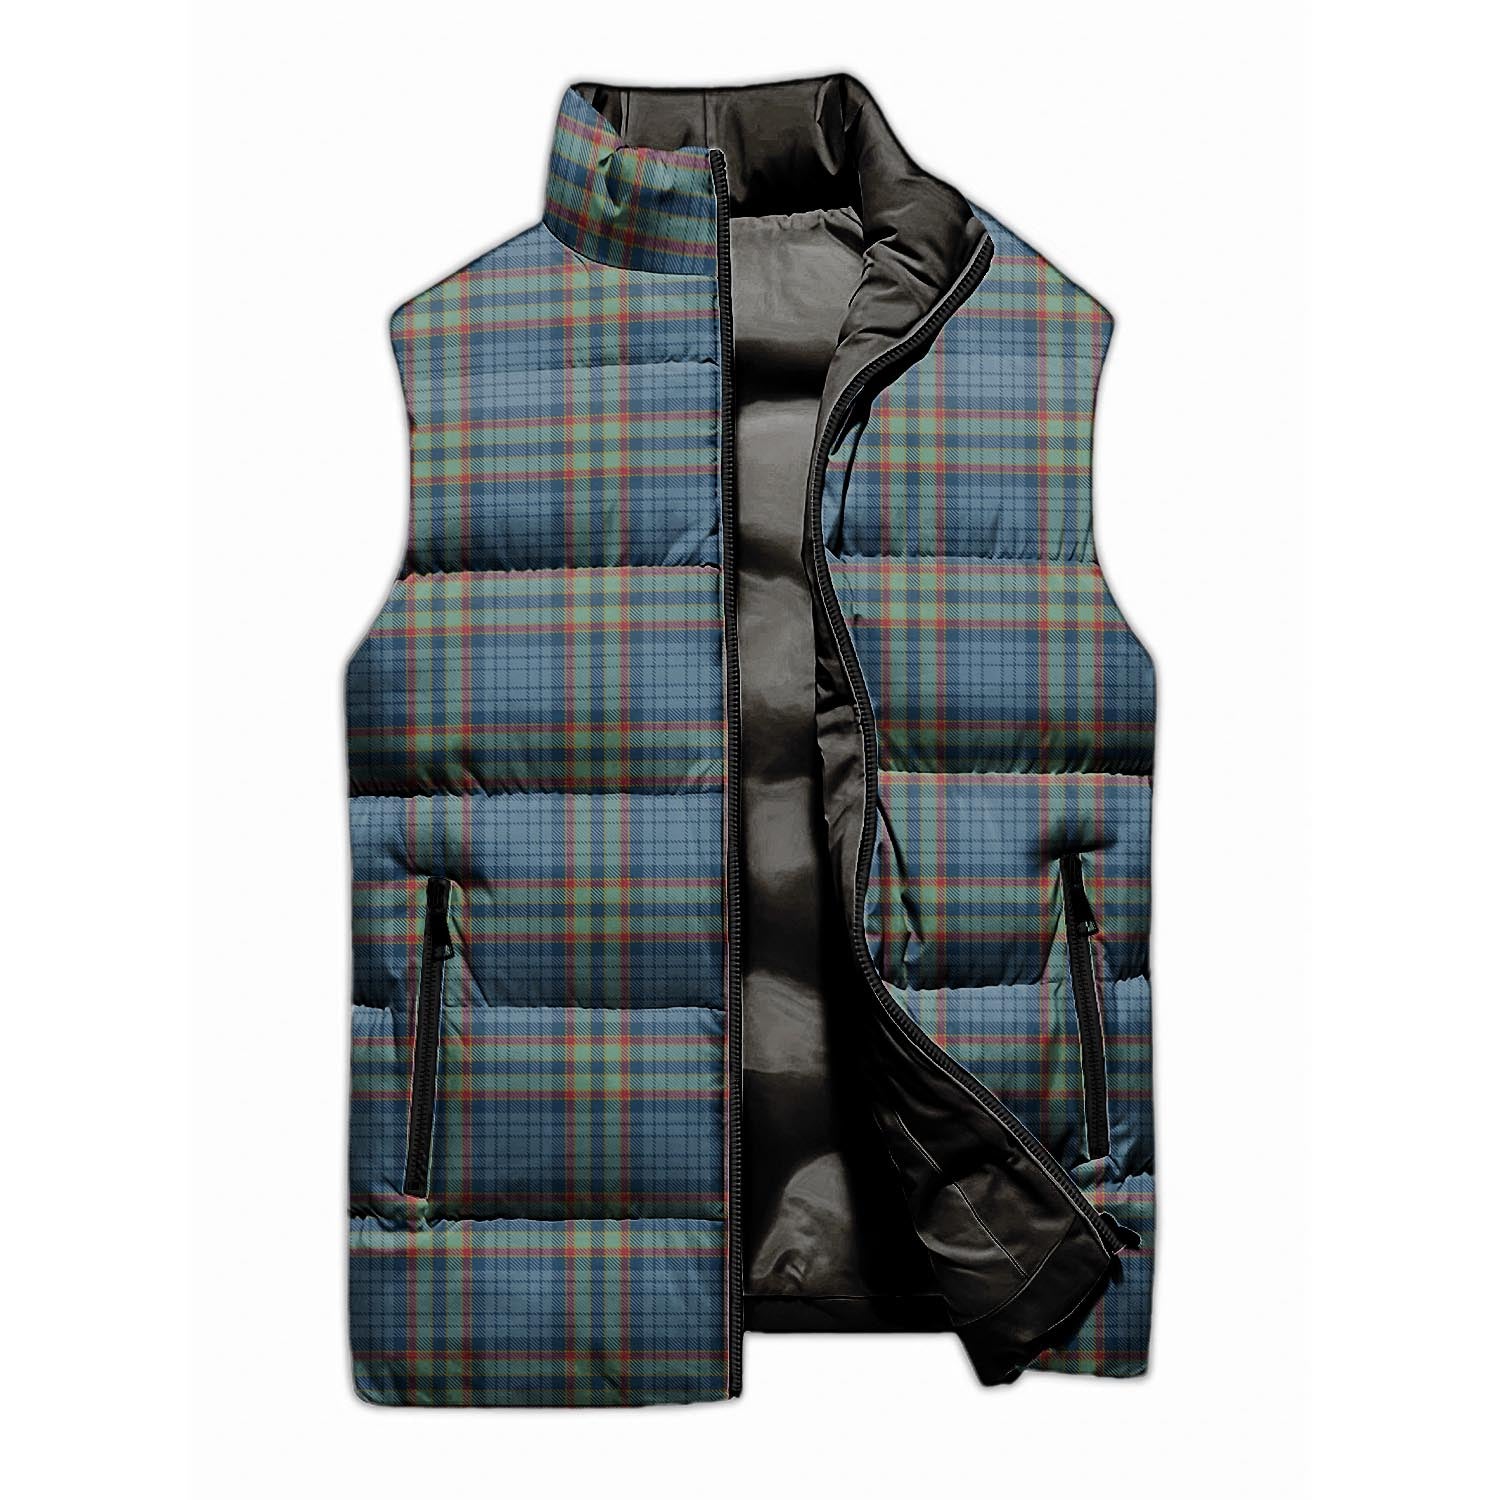 Ralston UK Tartan Sleeveless Puffer Jacket - Tartanvibesclothing